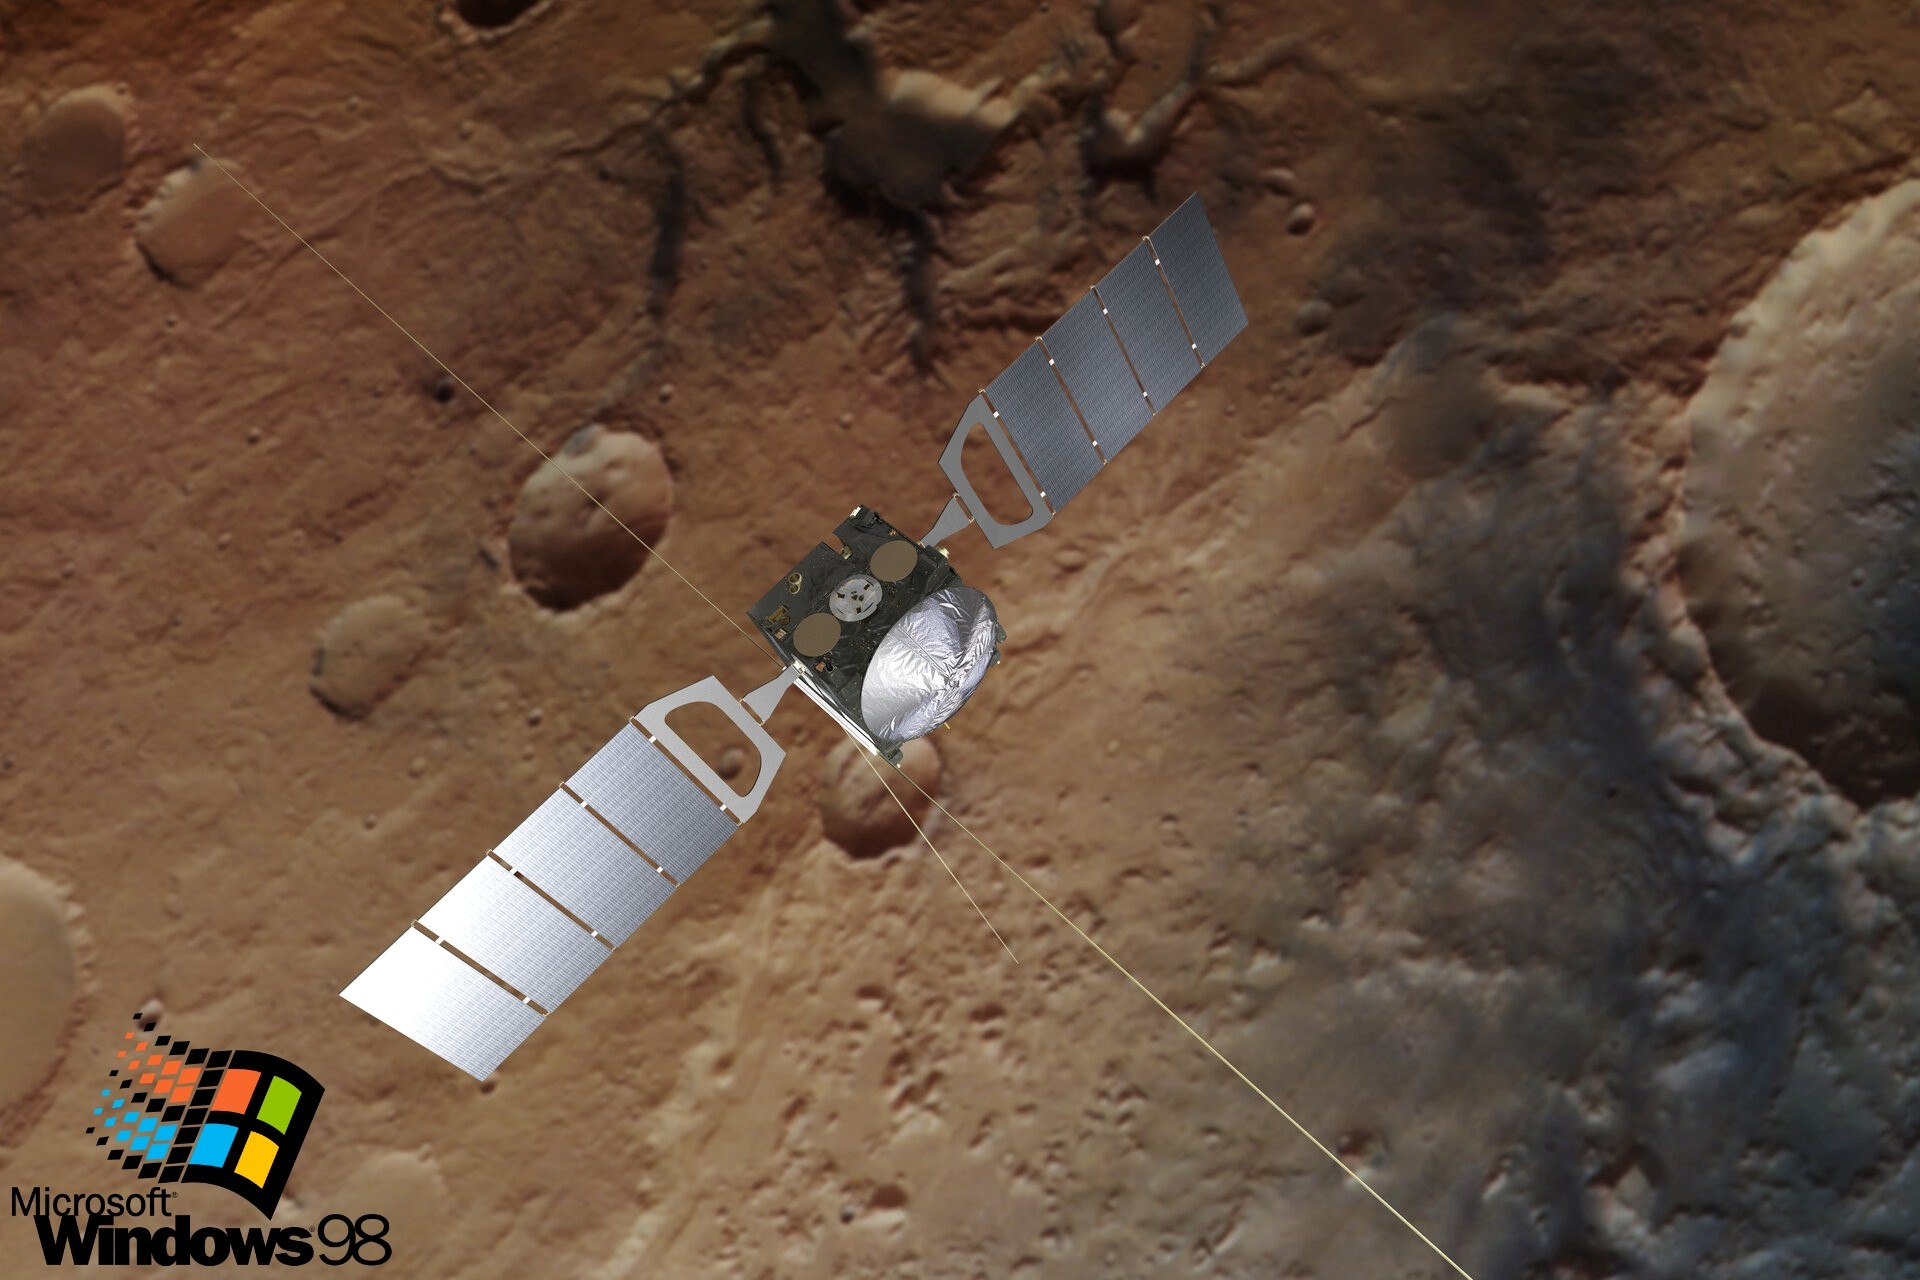  ESA กำลังจะอัพเกรด Windows 98 ในยานสำรวจพื้นผิวและหาน้ำบนดาวอังคารให้ทันสมัย